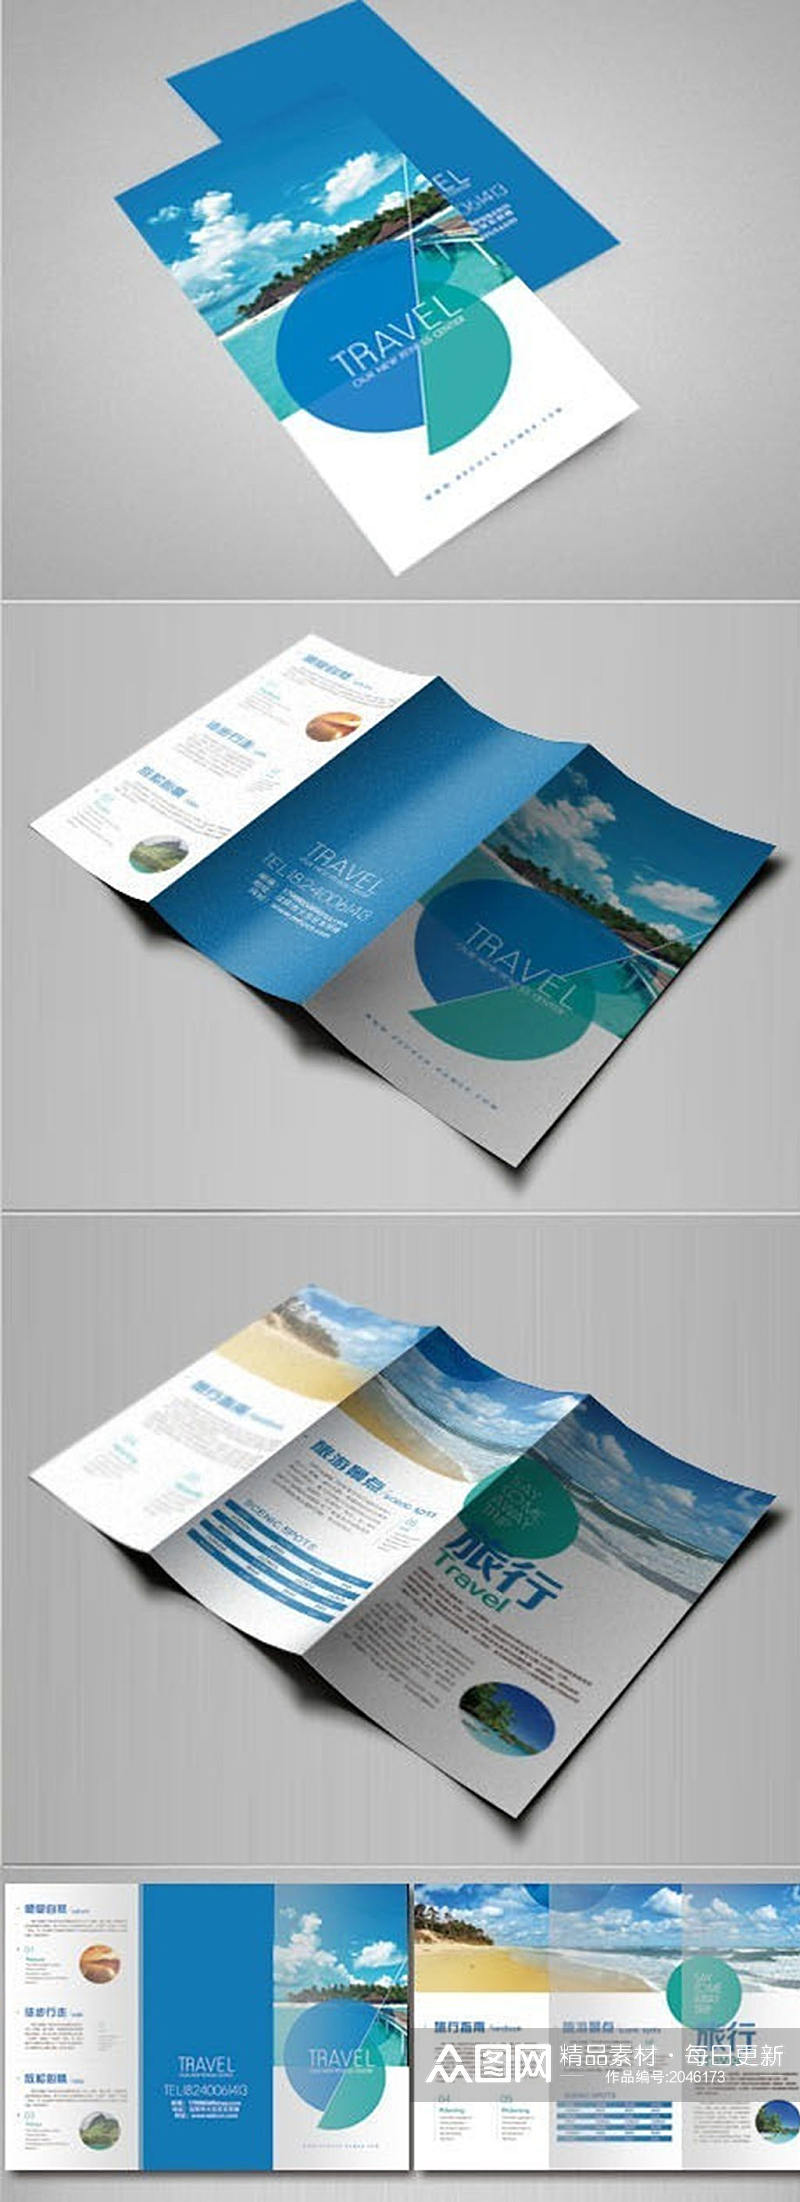 蓝色旅游折页设计素材